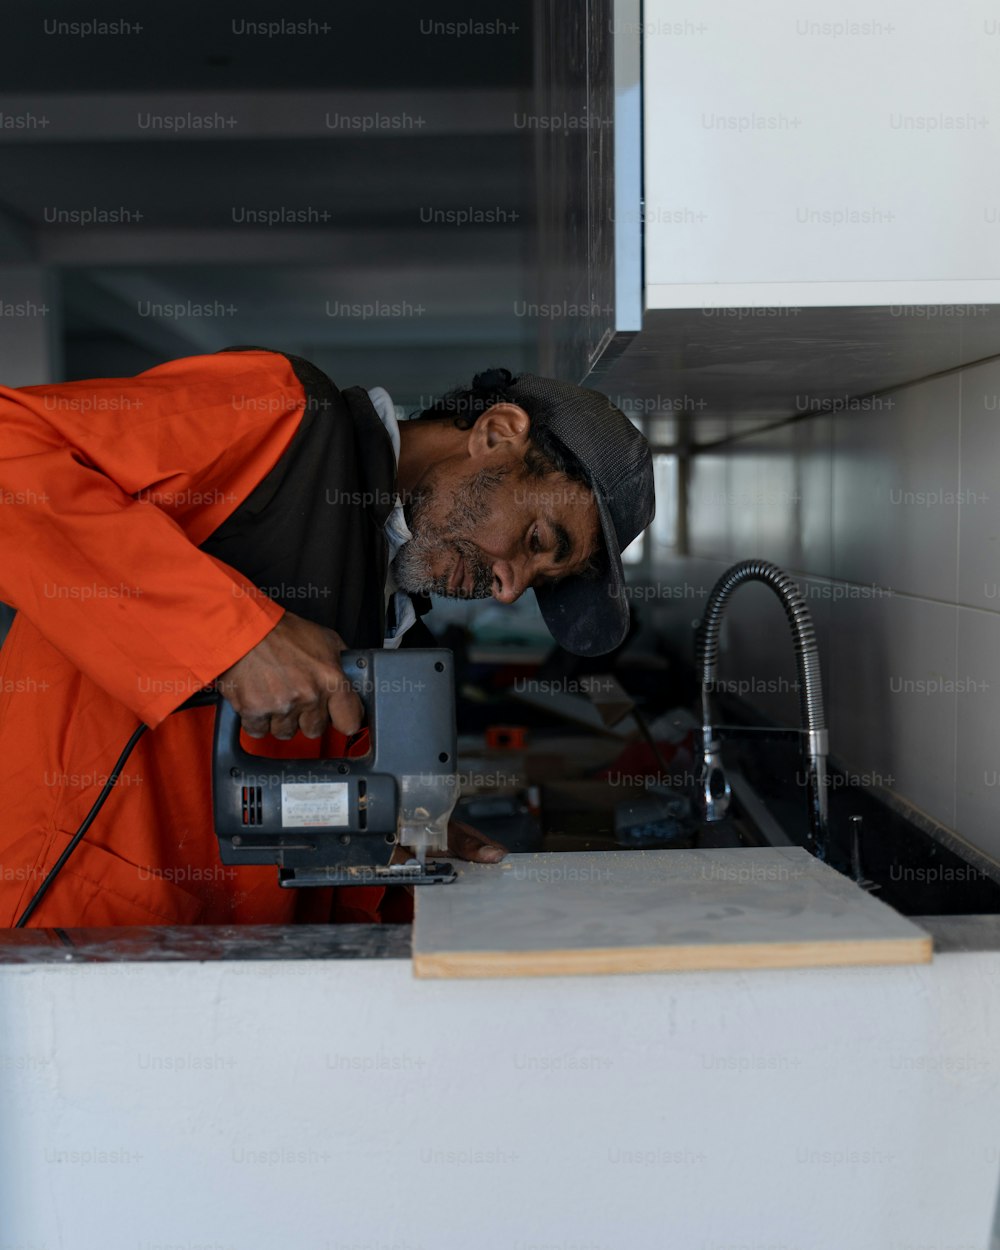 Ein Mann in einem orangefarbenen Overall, der an einer Maschine arbeitet